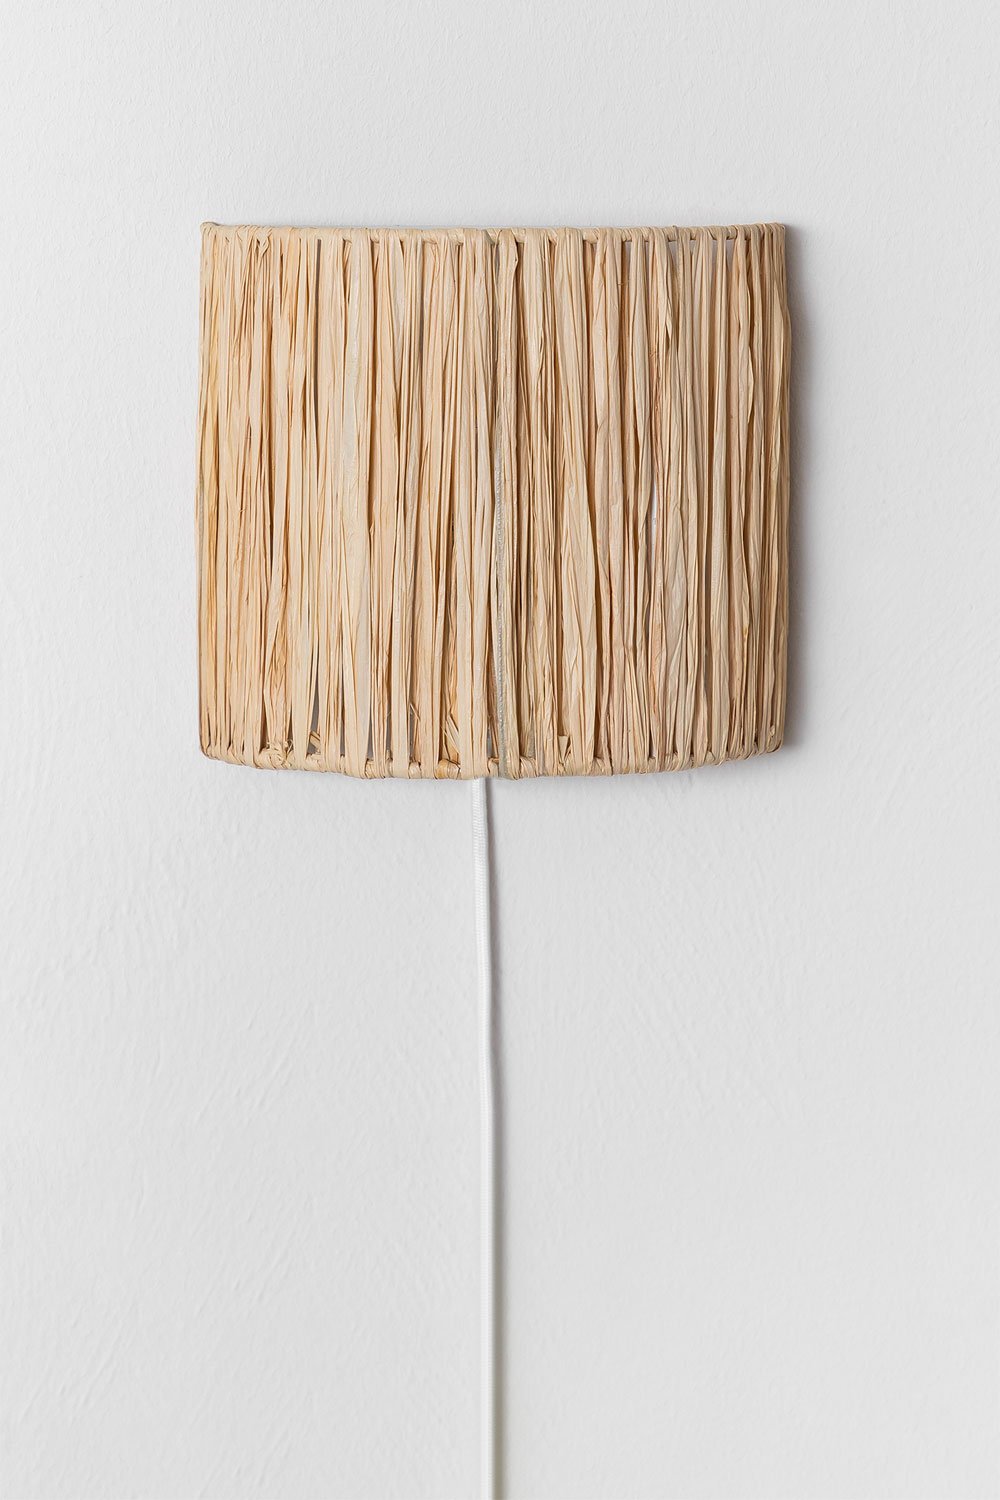 Lampada da parete in rafia Duvert, immagine della galleria 1